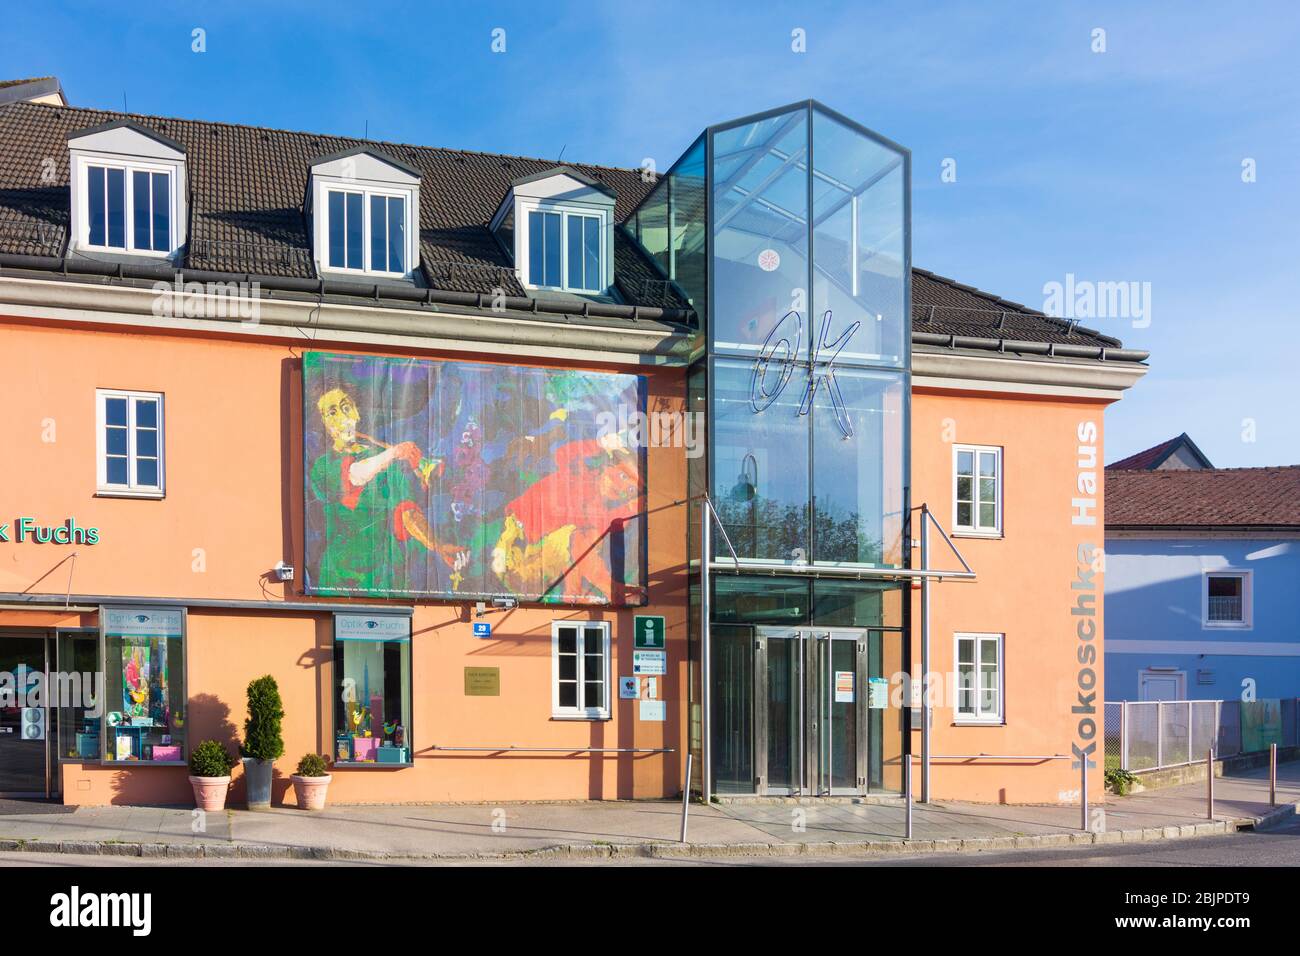 Pöchlarn: museum Kokoschka-Haus, in Mostviertel, Niederösterreich, Lower Austria, Austria Stock Photo